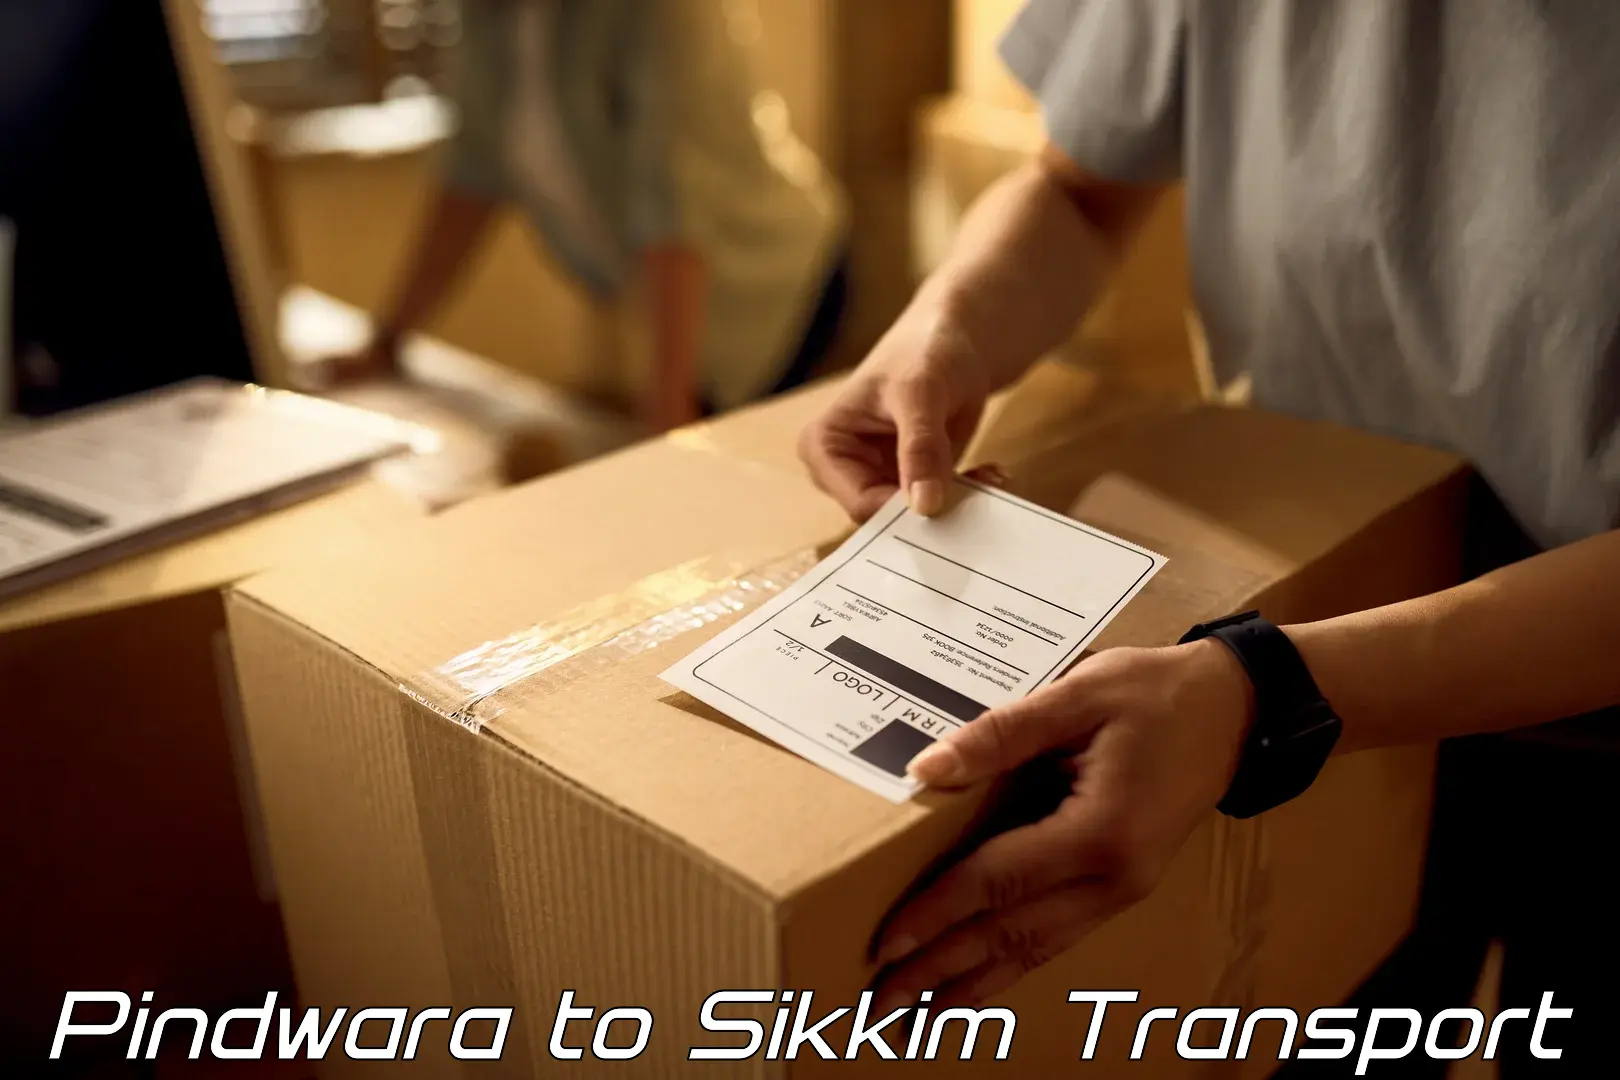 Shipping partner Pindwara to Sikkim